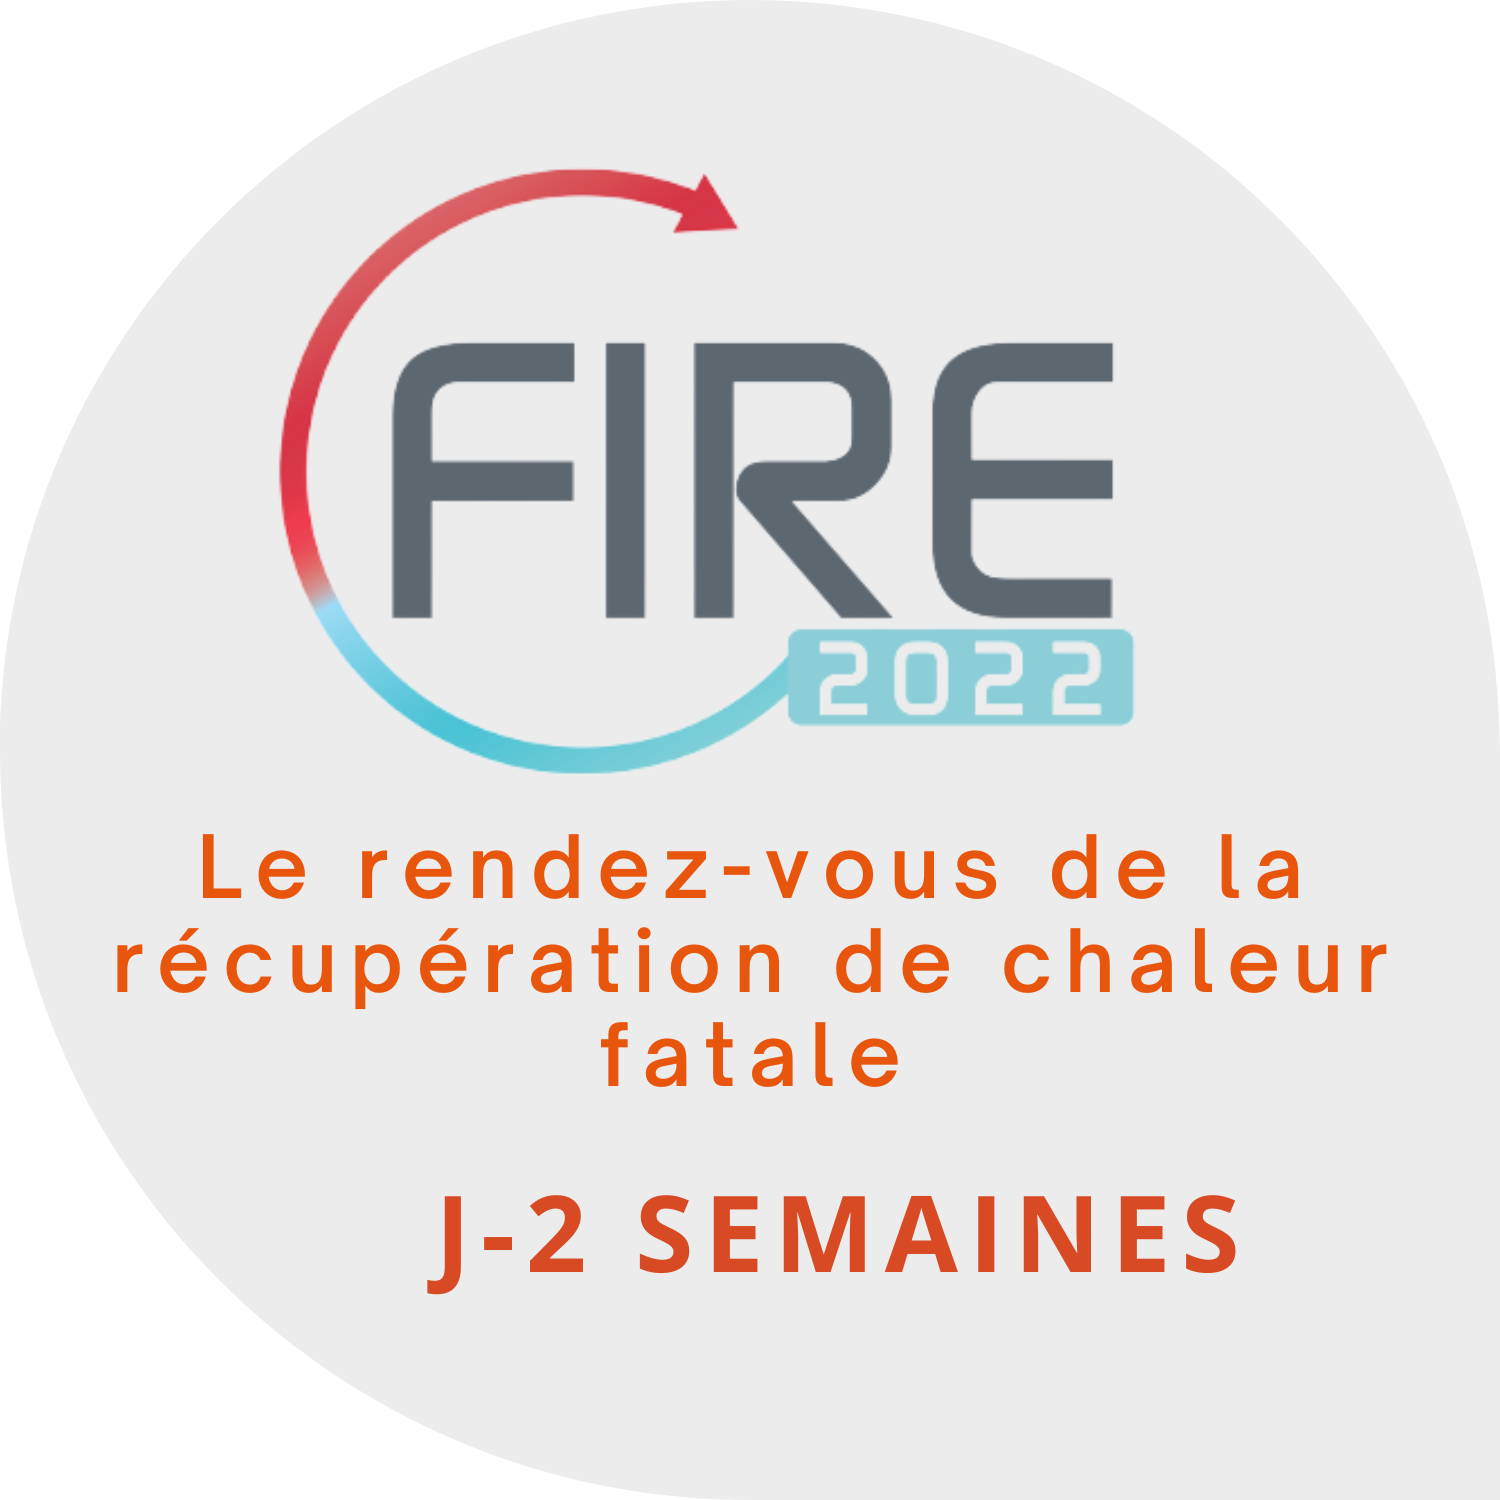 FIRE_2022_Actu_Site_Internet